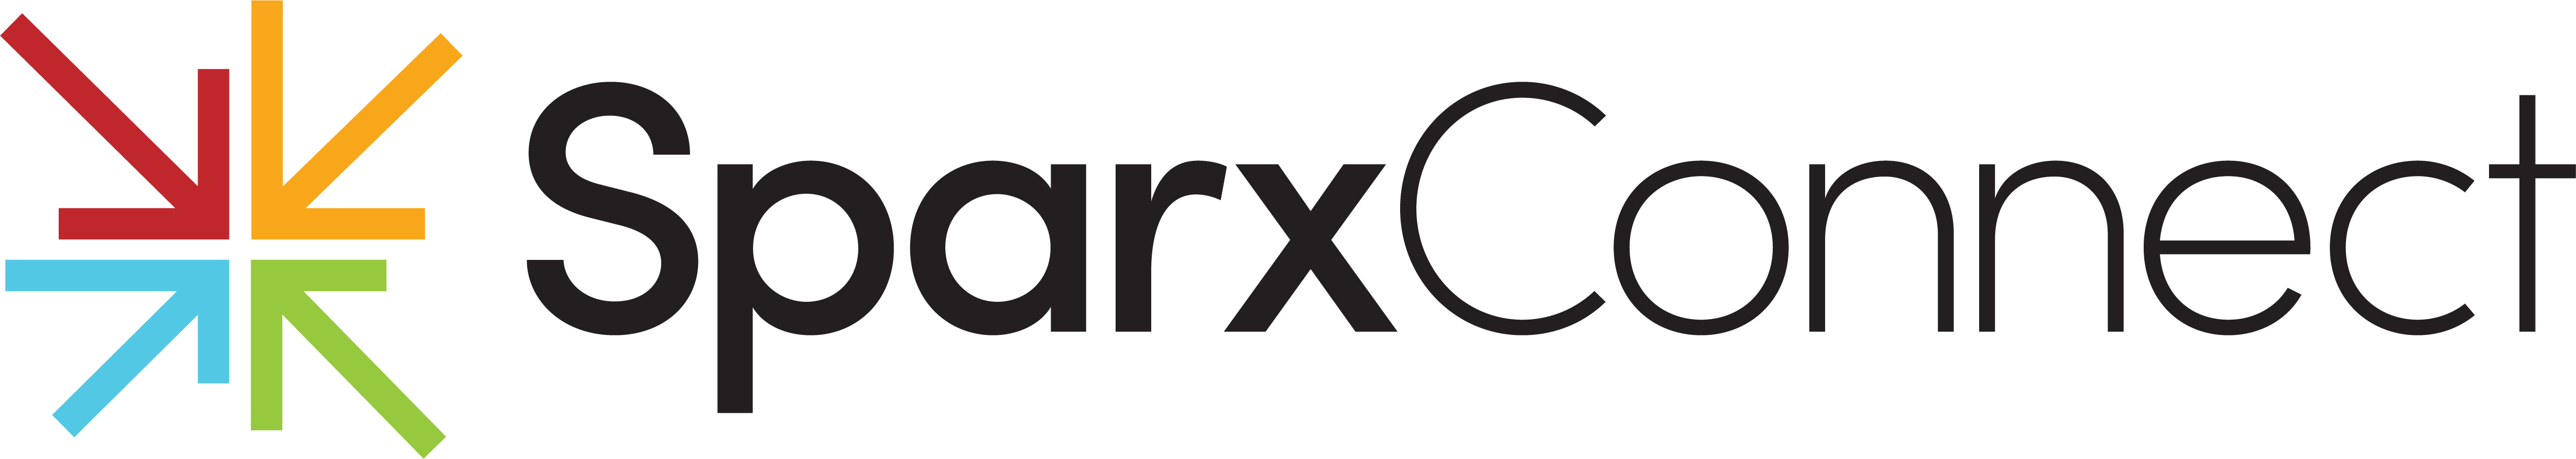 SparxConnect logo